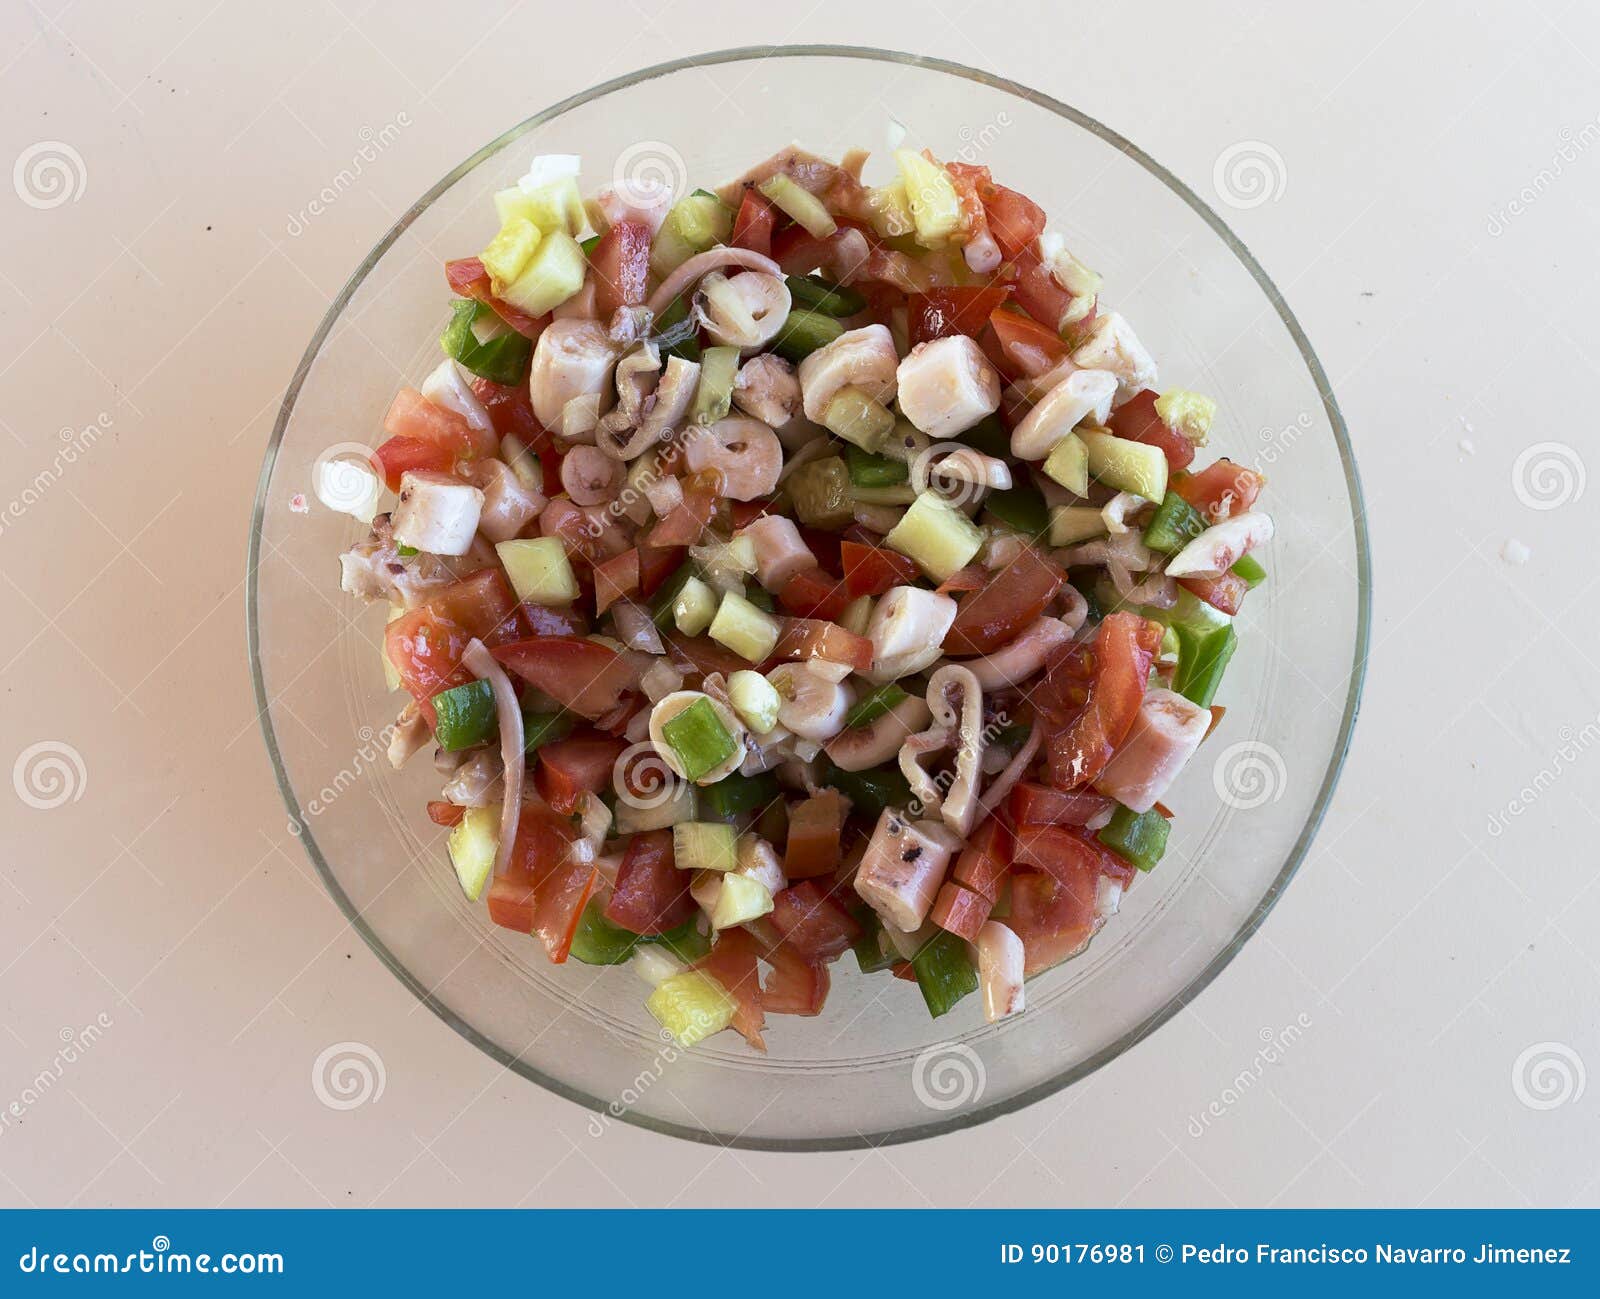 octopus salad ensalada de pulpo